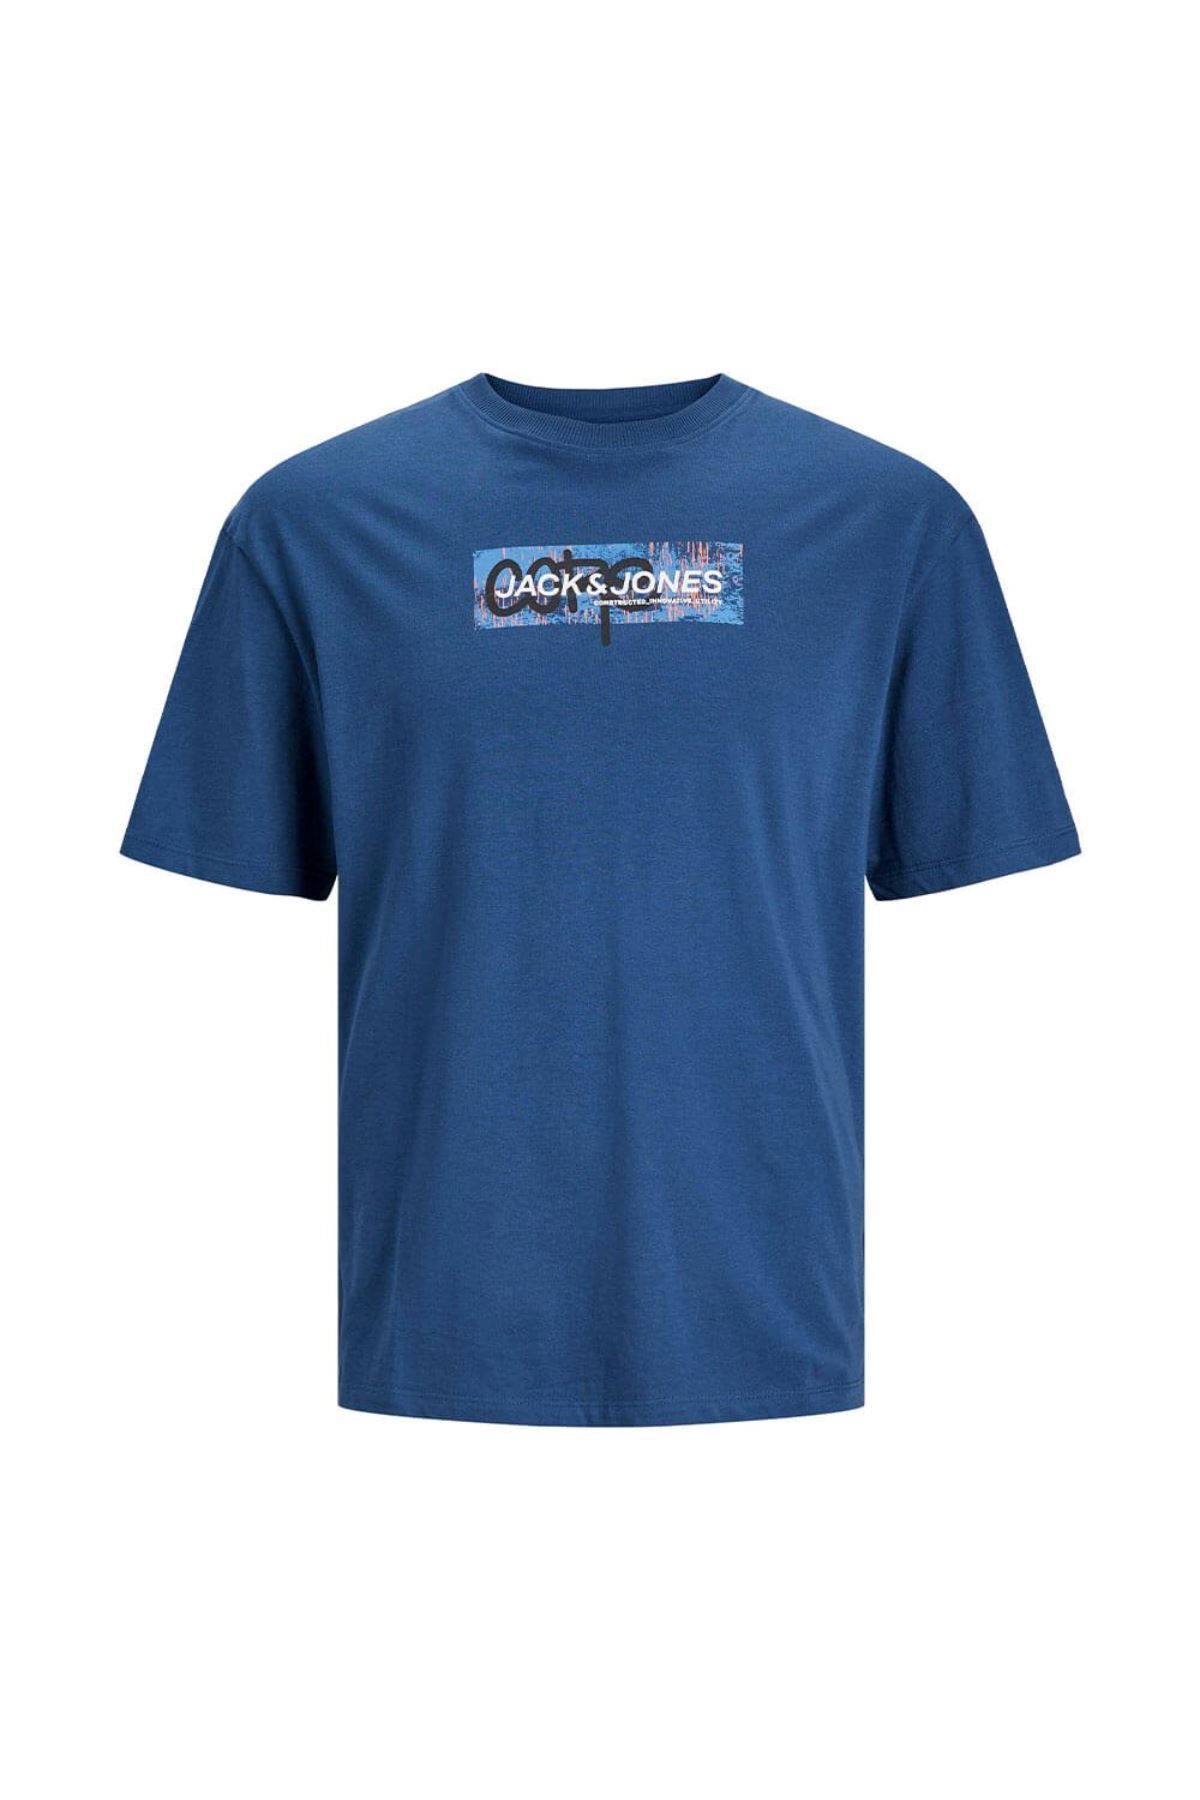 Jack & Jones Jack&Jones O Yaka Standart Kalıp Mavi Erkek %100 Pamuk T-Shirt 12253477